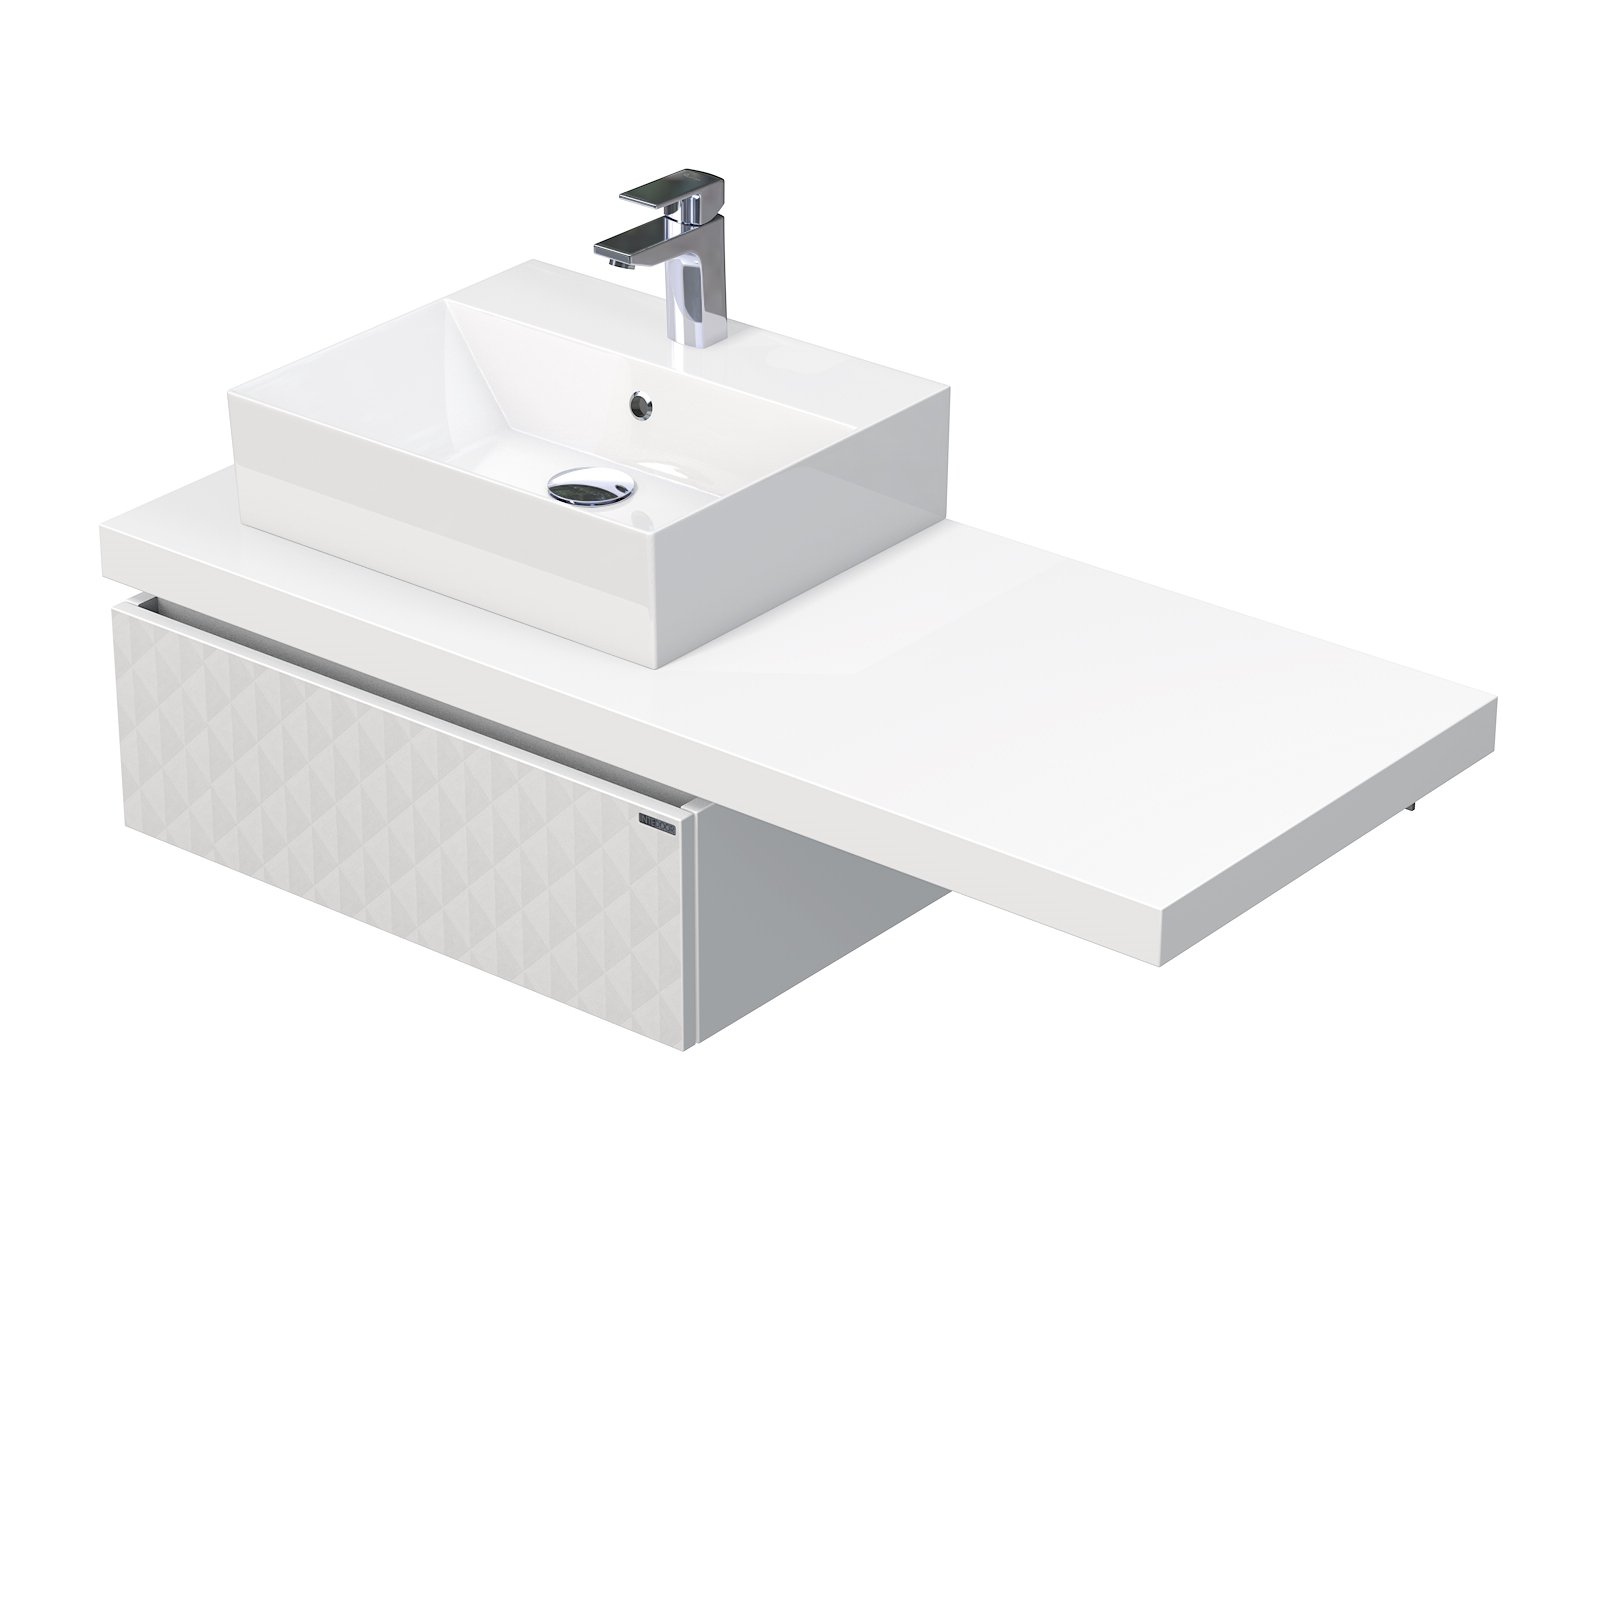 Desk 3D - skříňka 120 cm s umyvadlem na desku vlevo, 1 zásuvka, závěsná, bílá DE 54 3D 120 L STORM 1Z B073